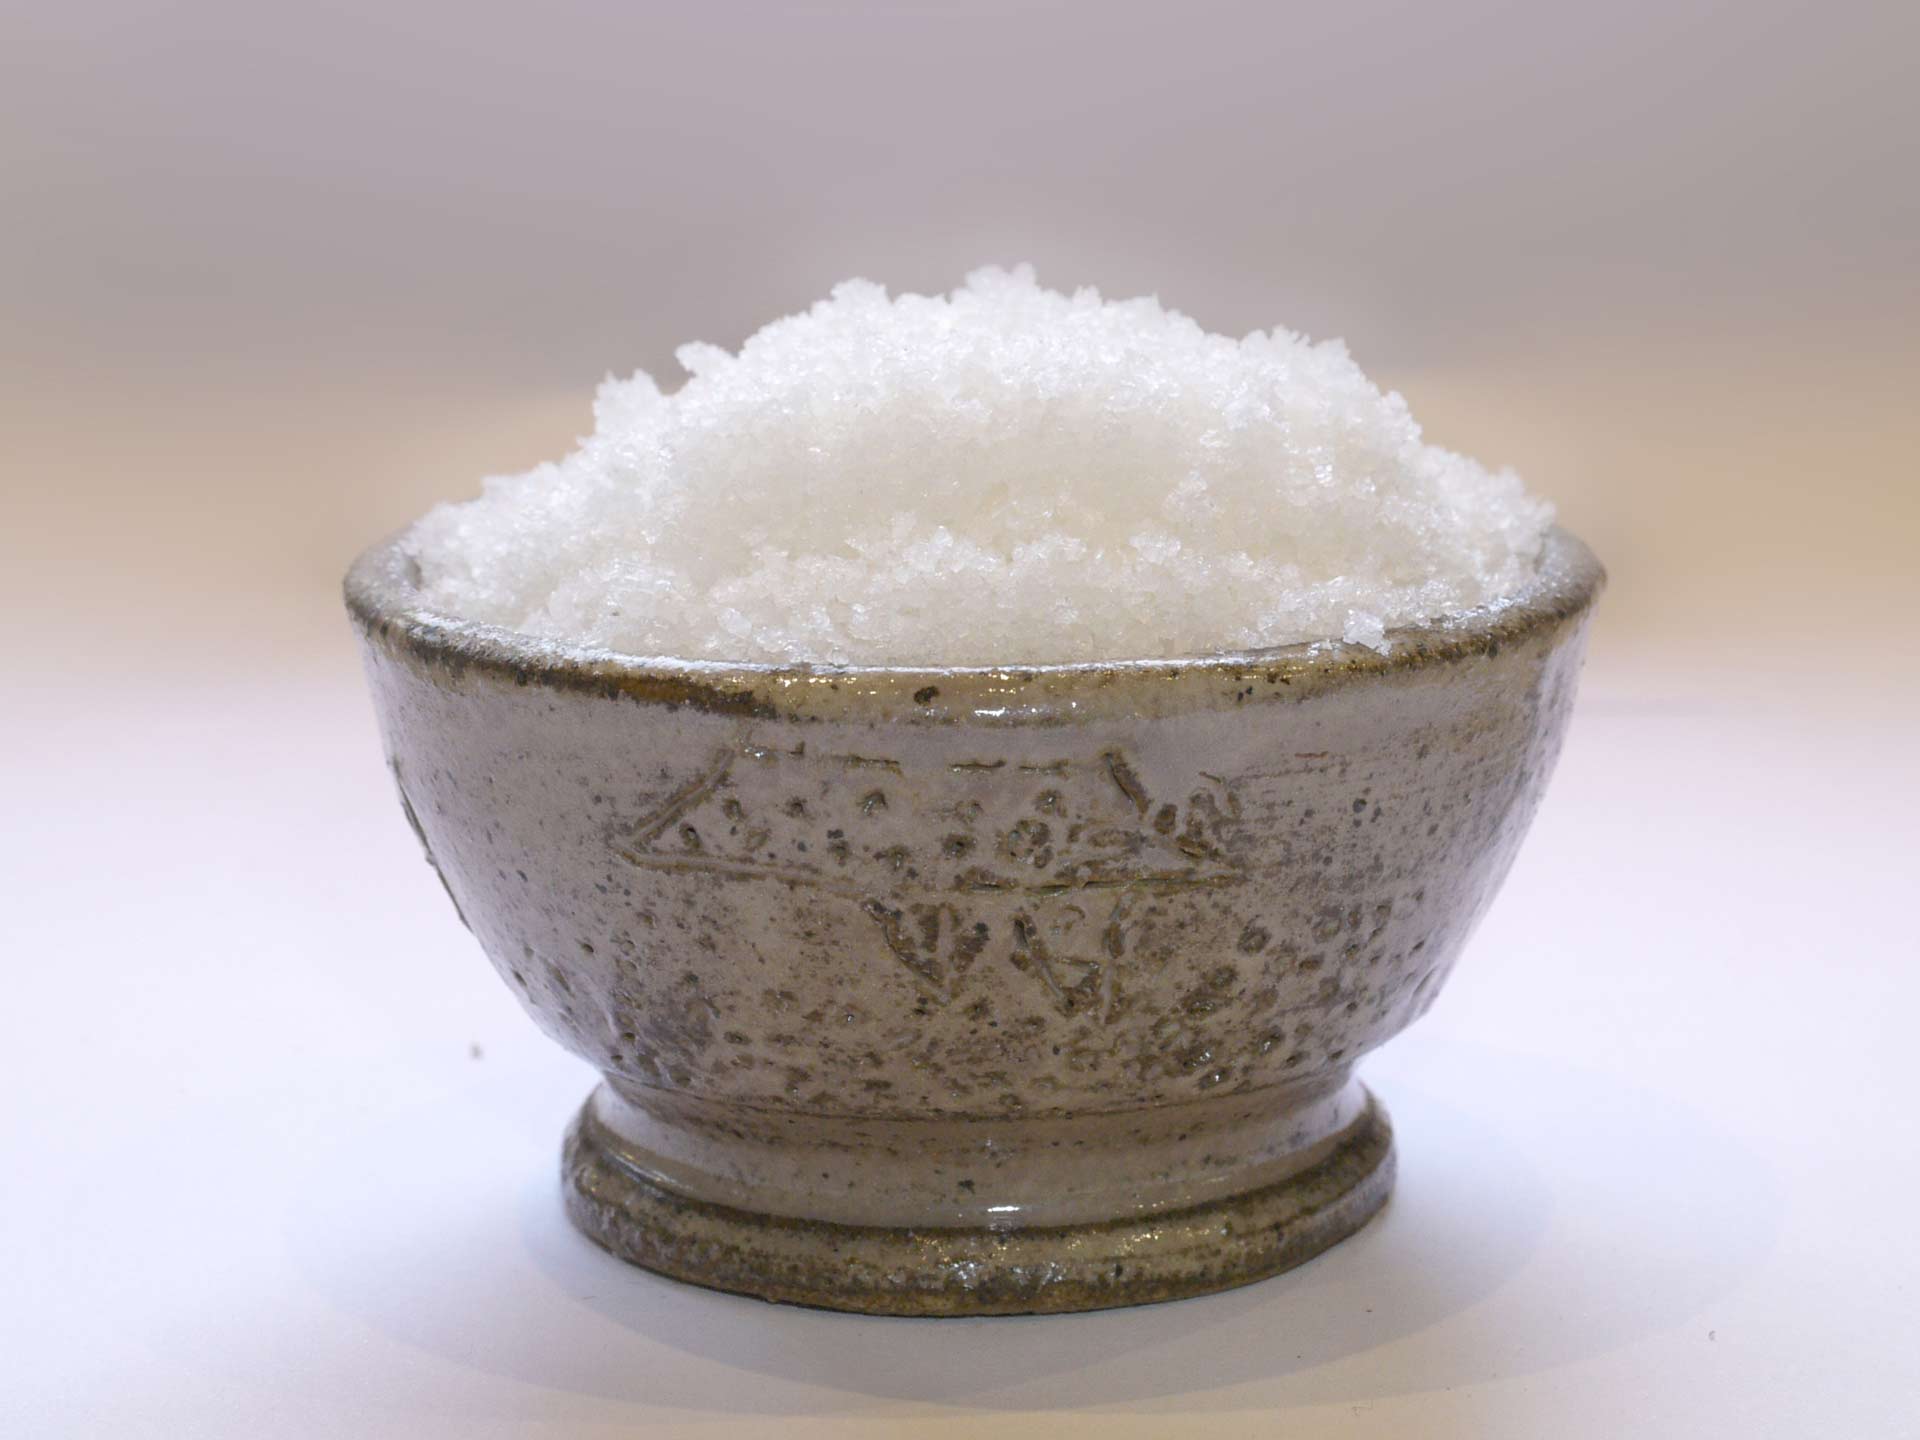 Fleur de sel de Noirmoutier - Achat, utilisation, recettes